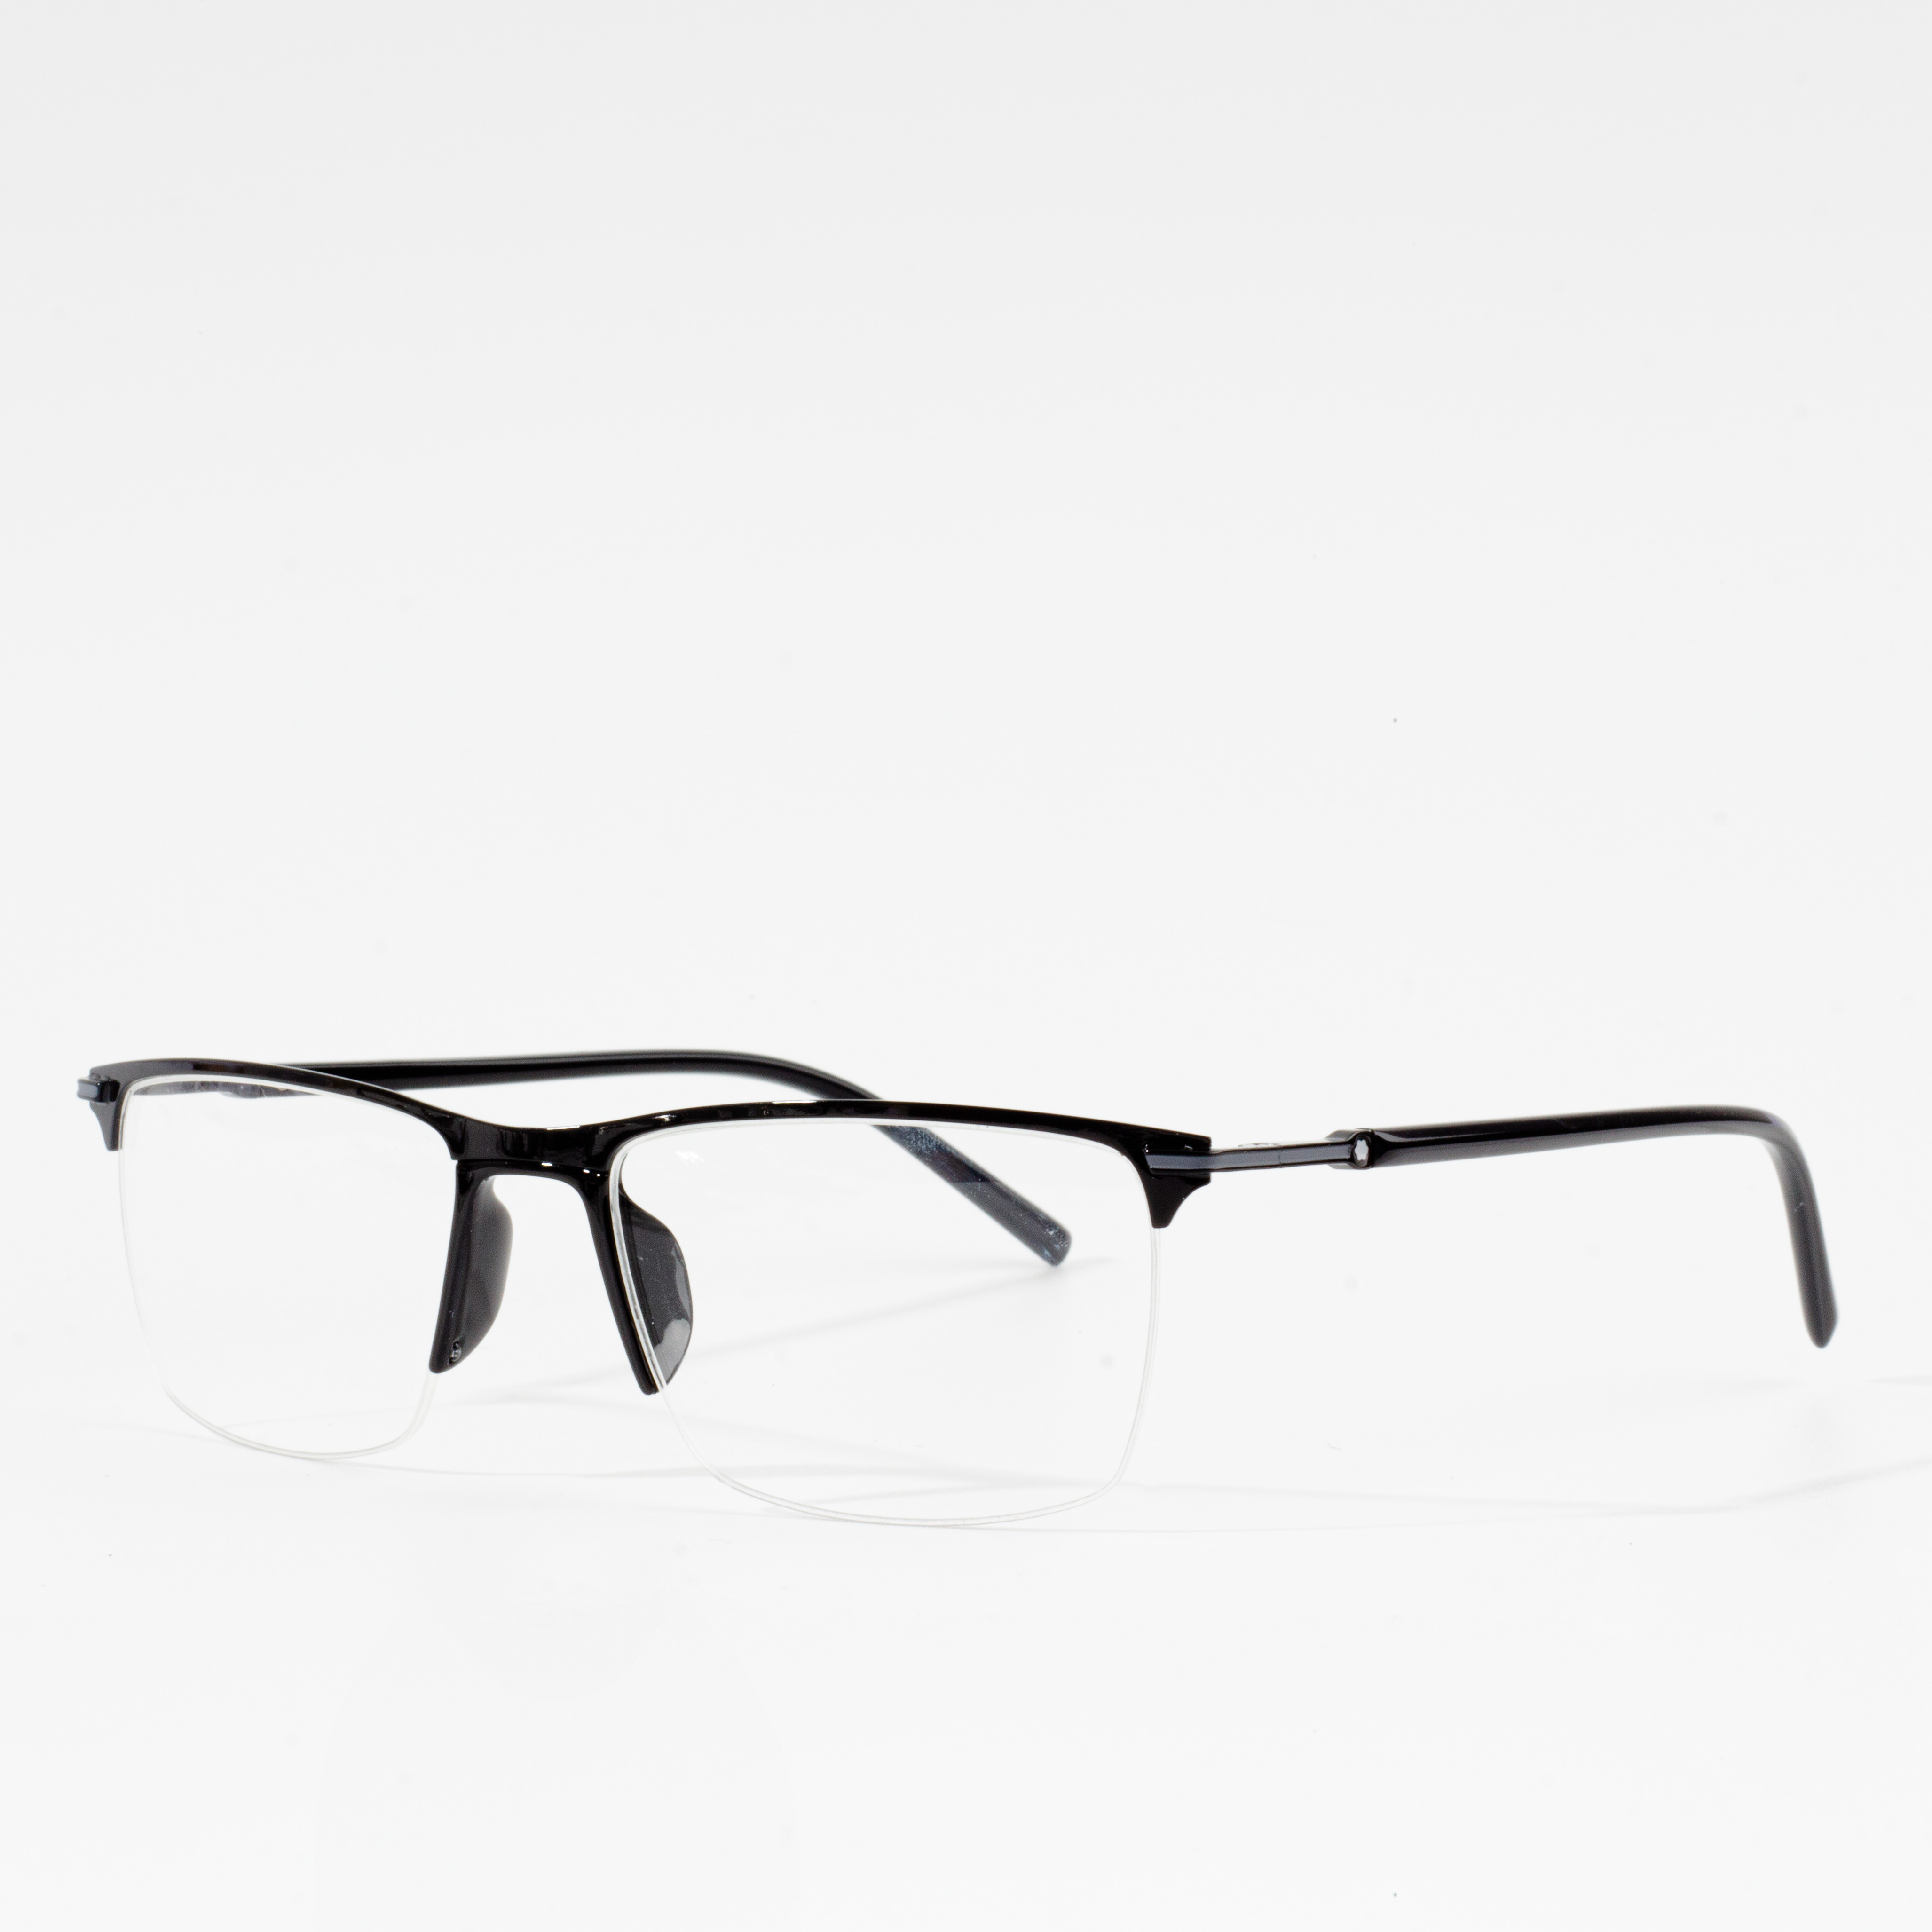 niwonyi Optical Eyeglasses Frames